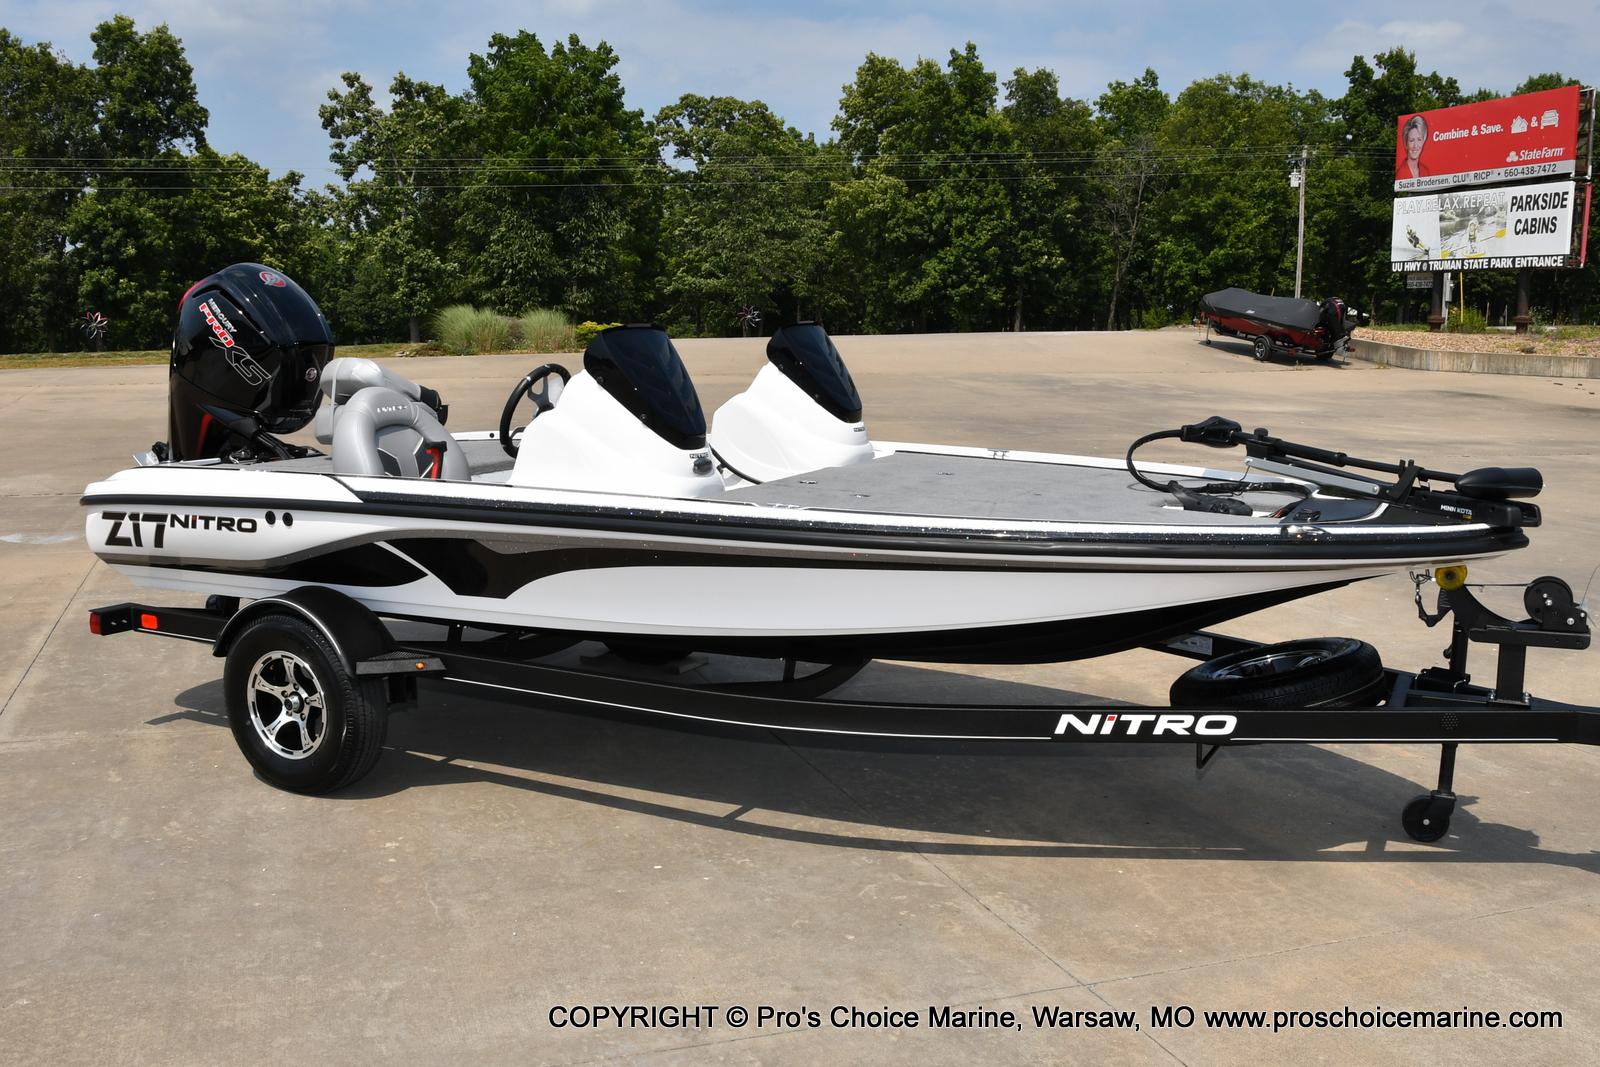 Nitro Z17 boats for sale